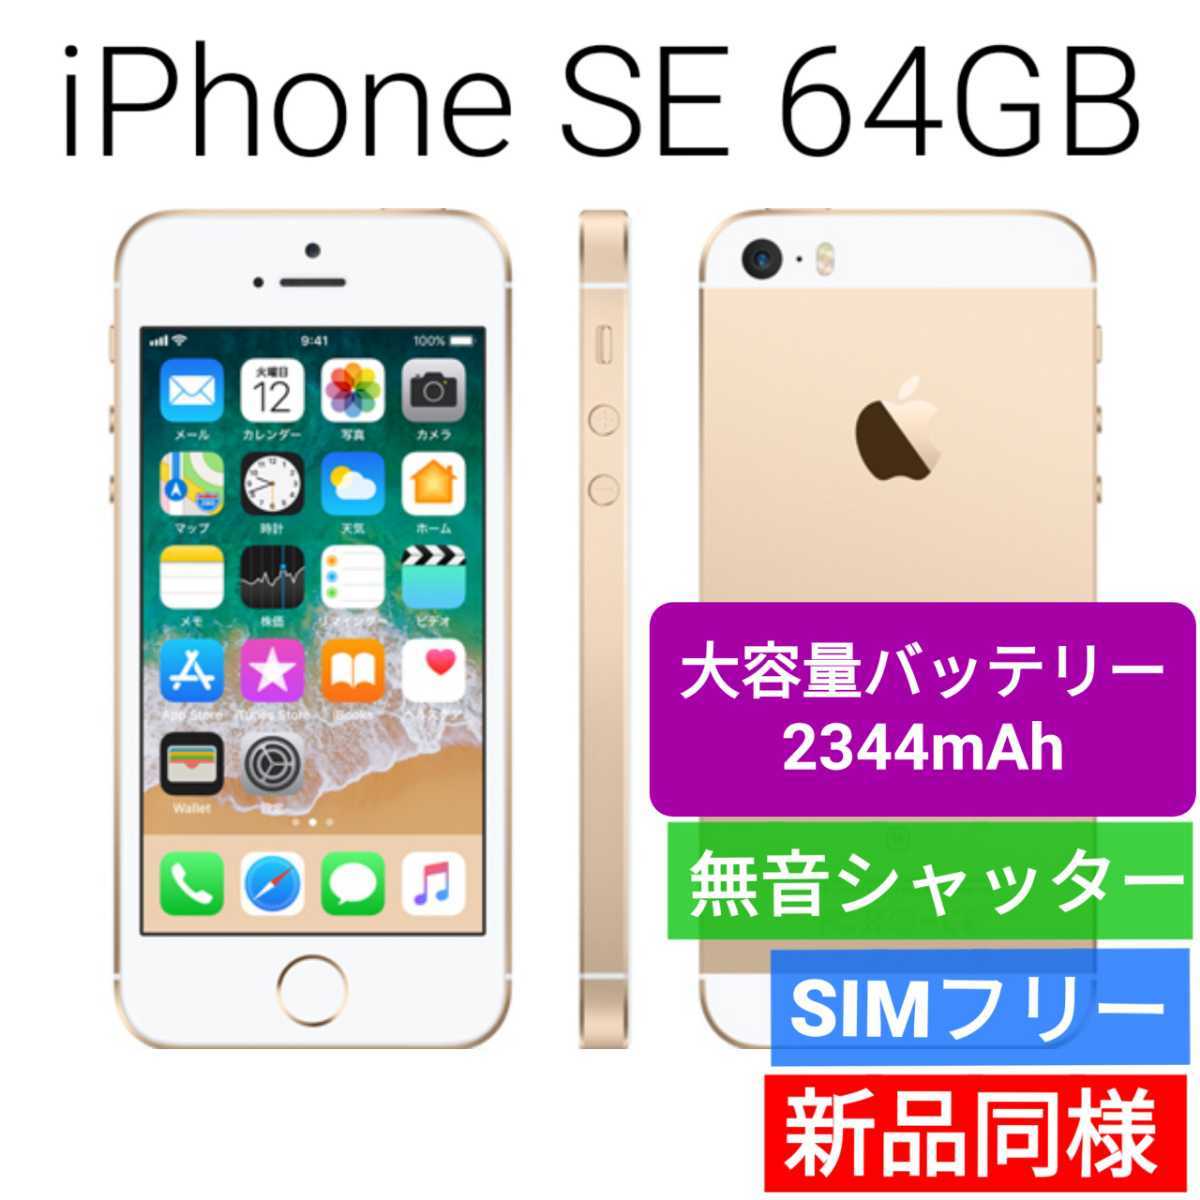 新品同等 大容量バッテリー iPhone SE A1662 64GB ゴールド 海外版 SIMフリー シャッター音なし 送料無料 国内発送 IMEI  355436070300642